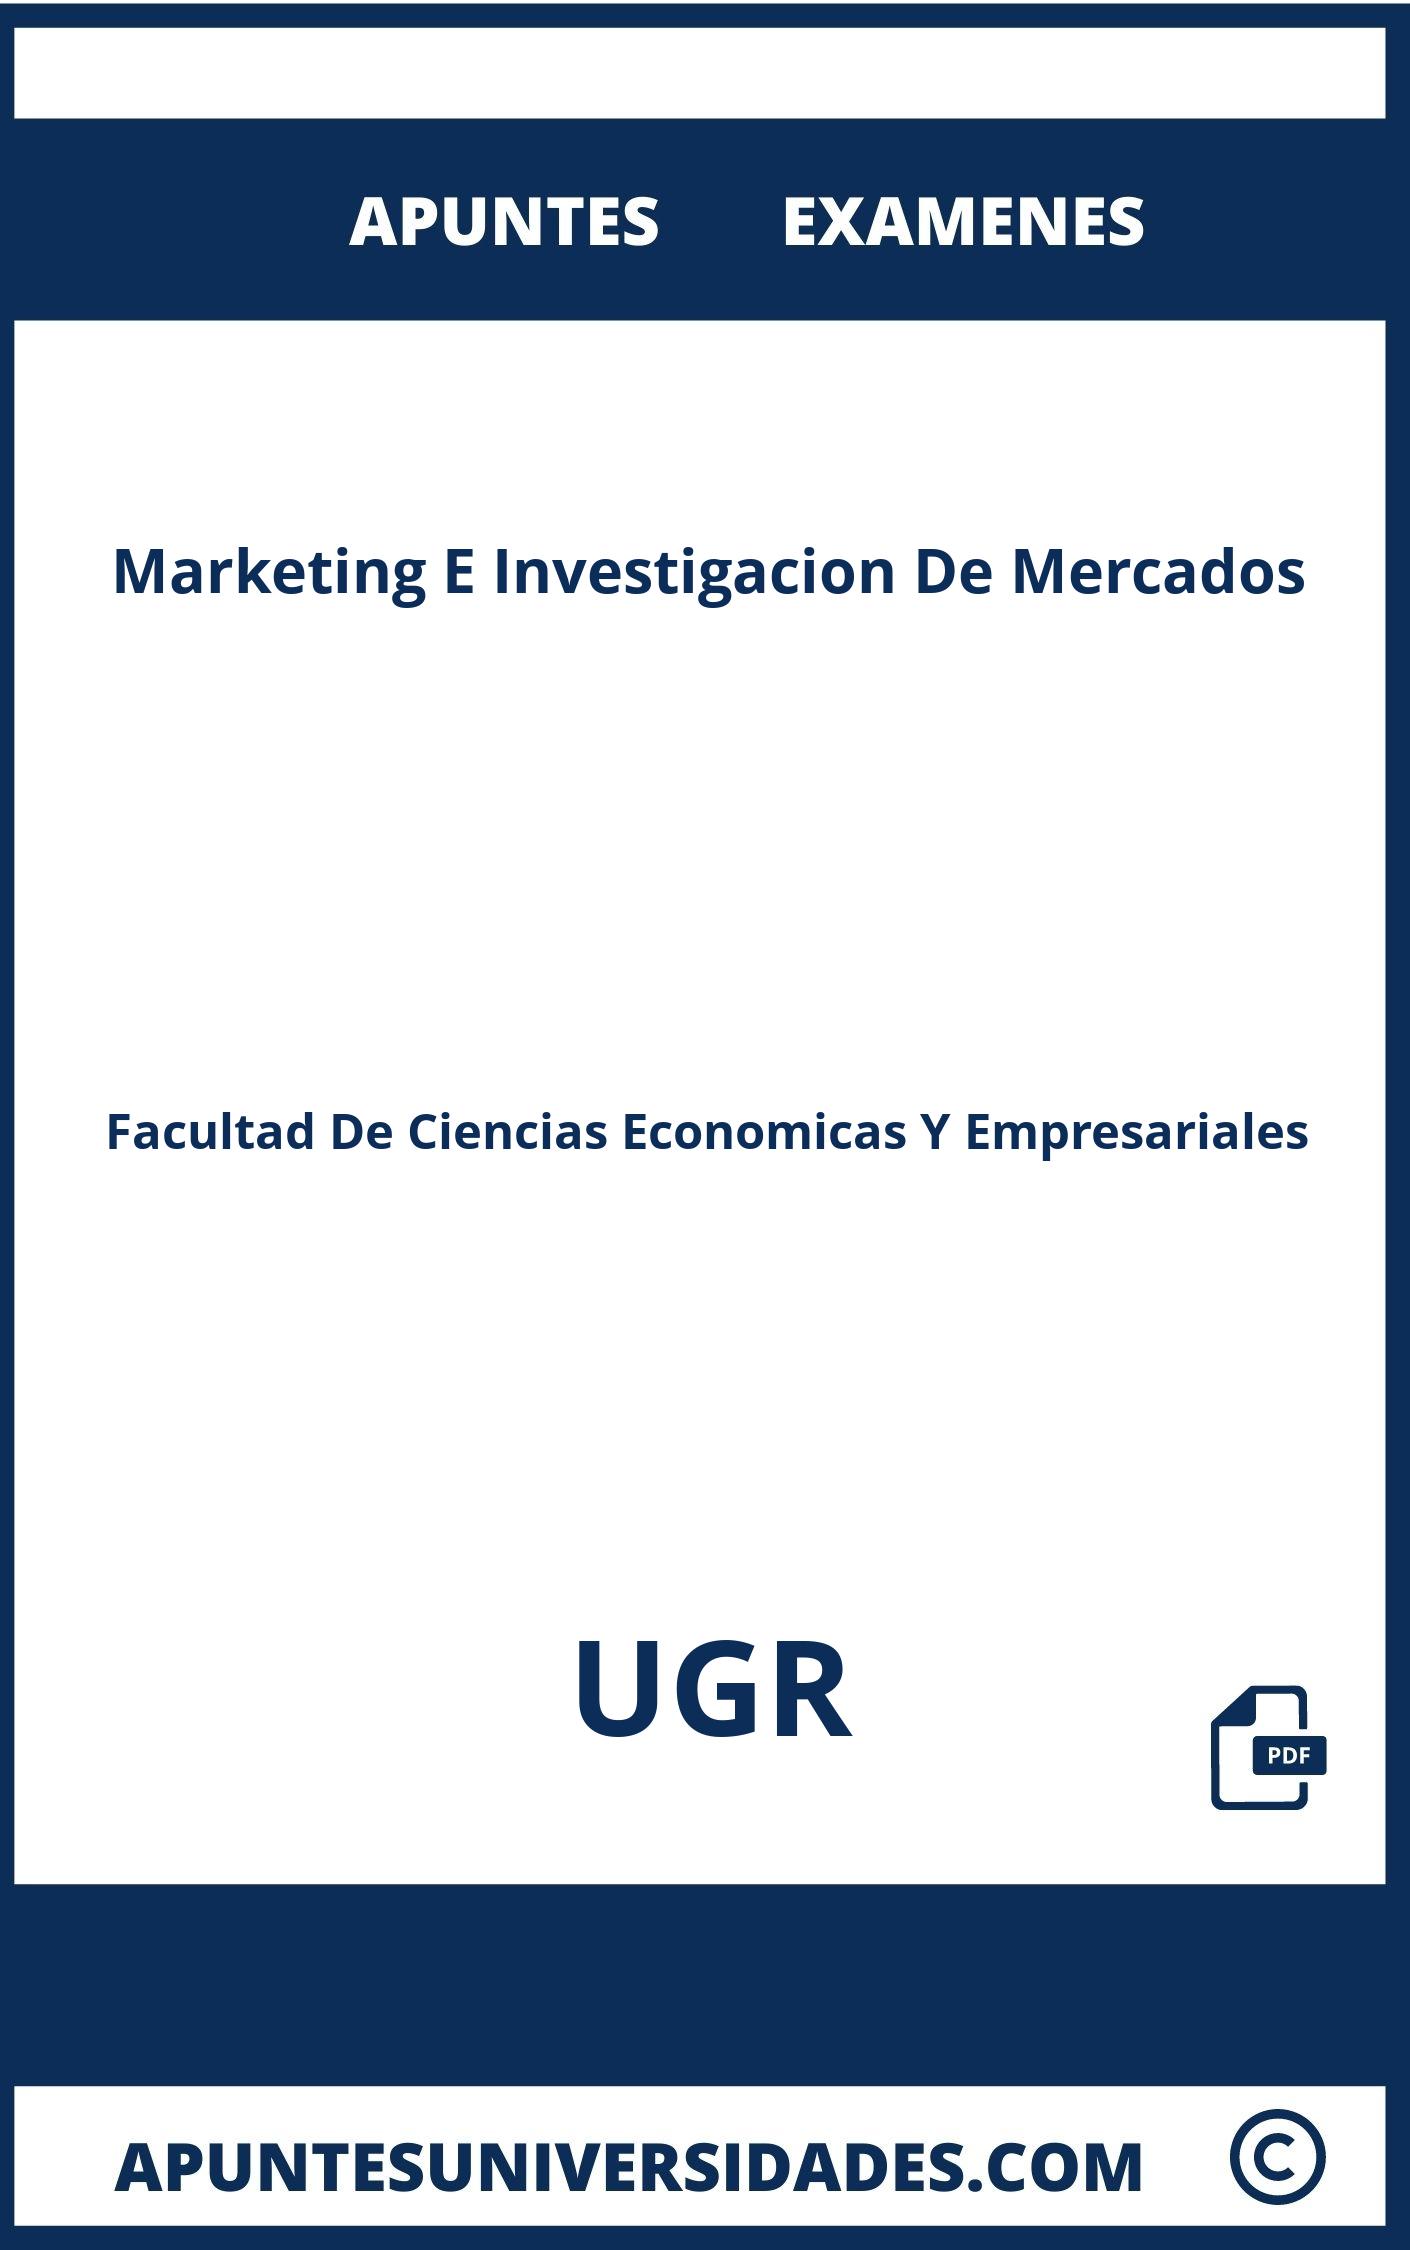 Examenes y Apuntes Marketing E Investigacion De Mercados UGR